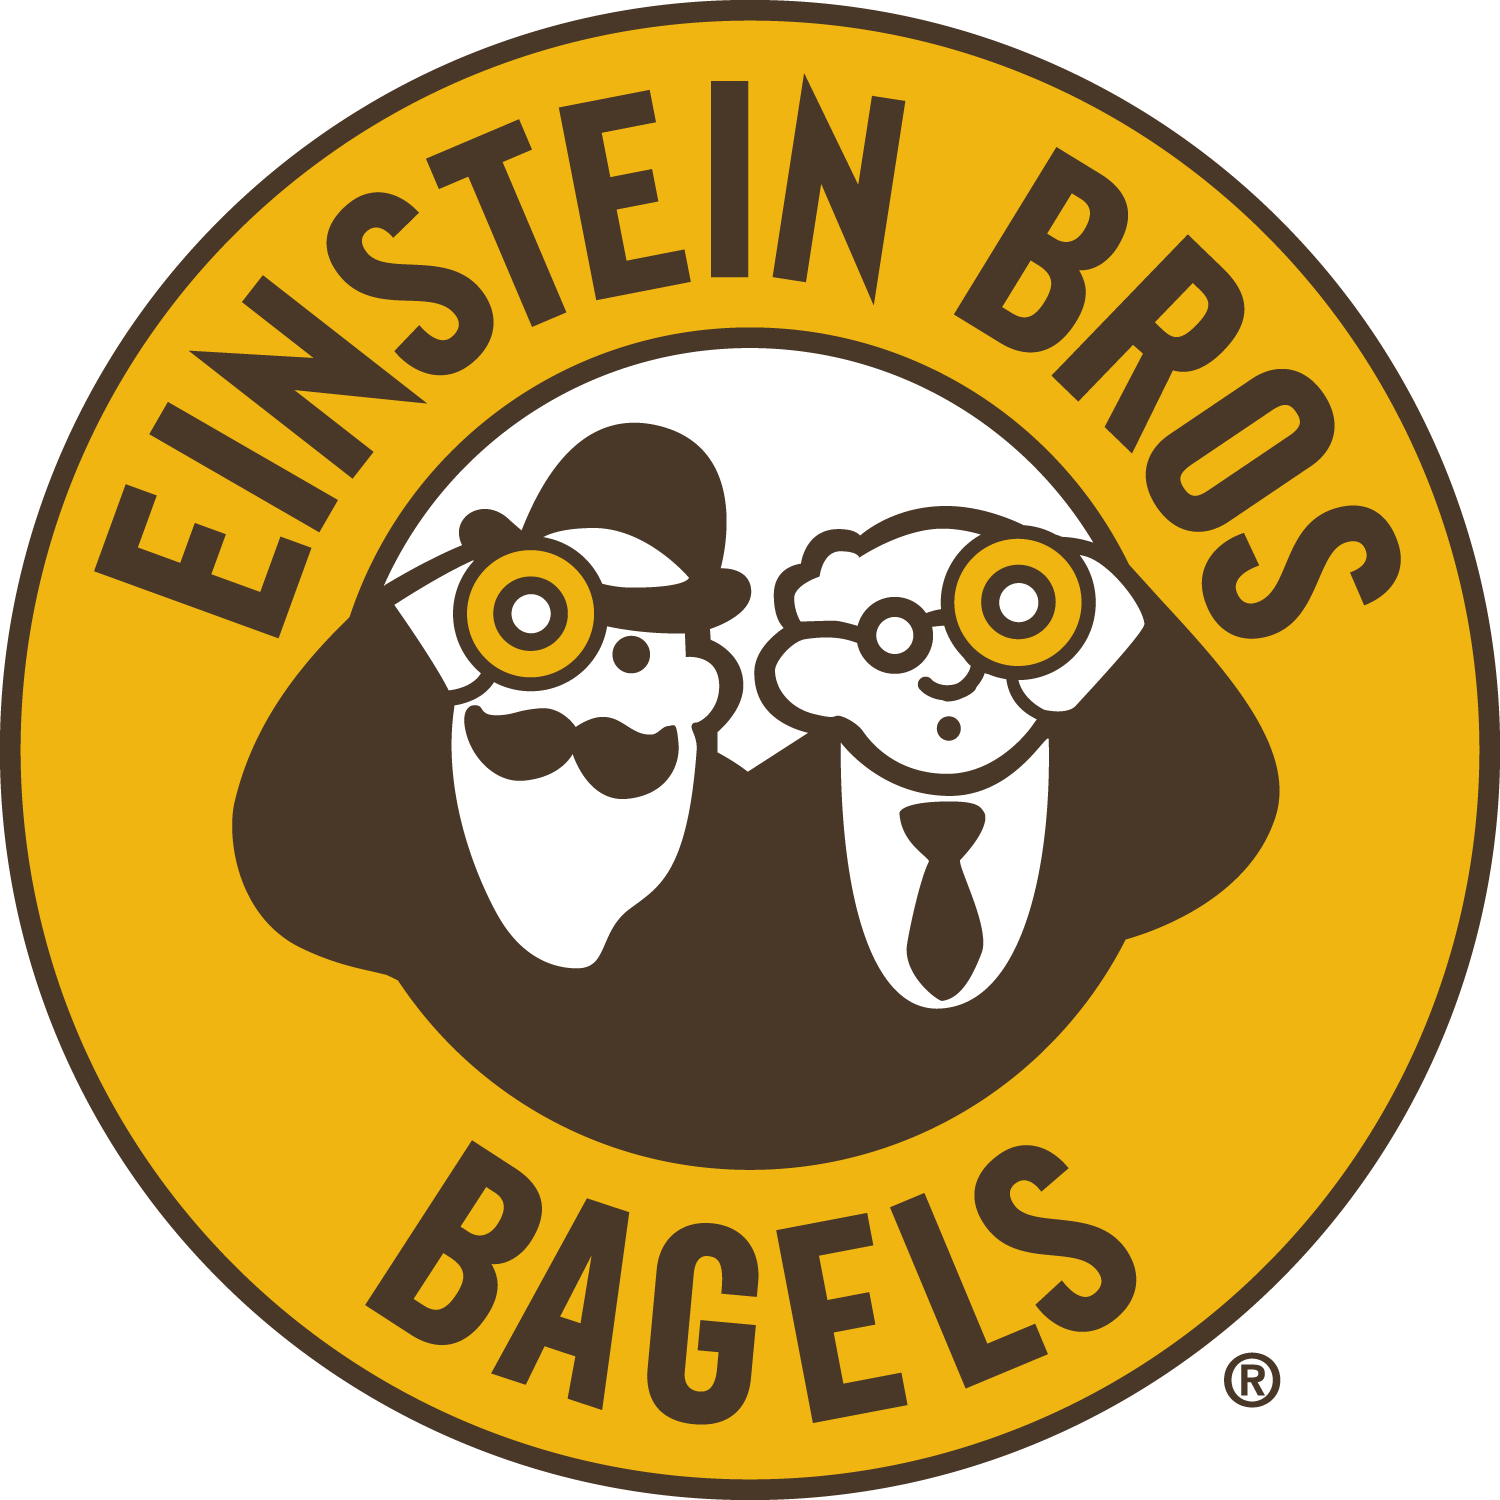 Einstein Bros University Of California Irvine Bagels Coffee